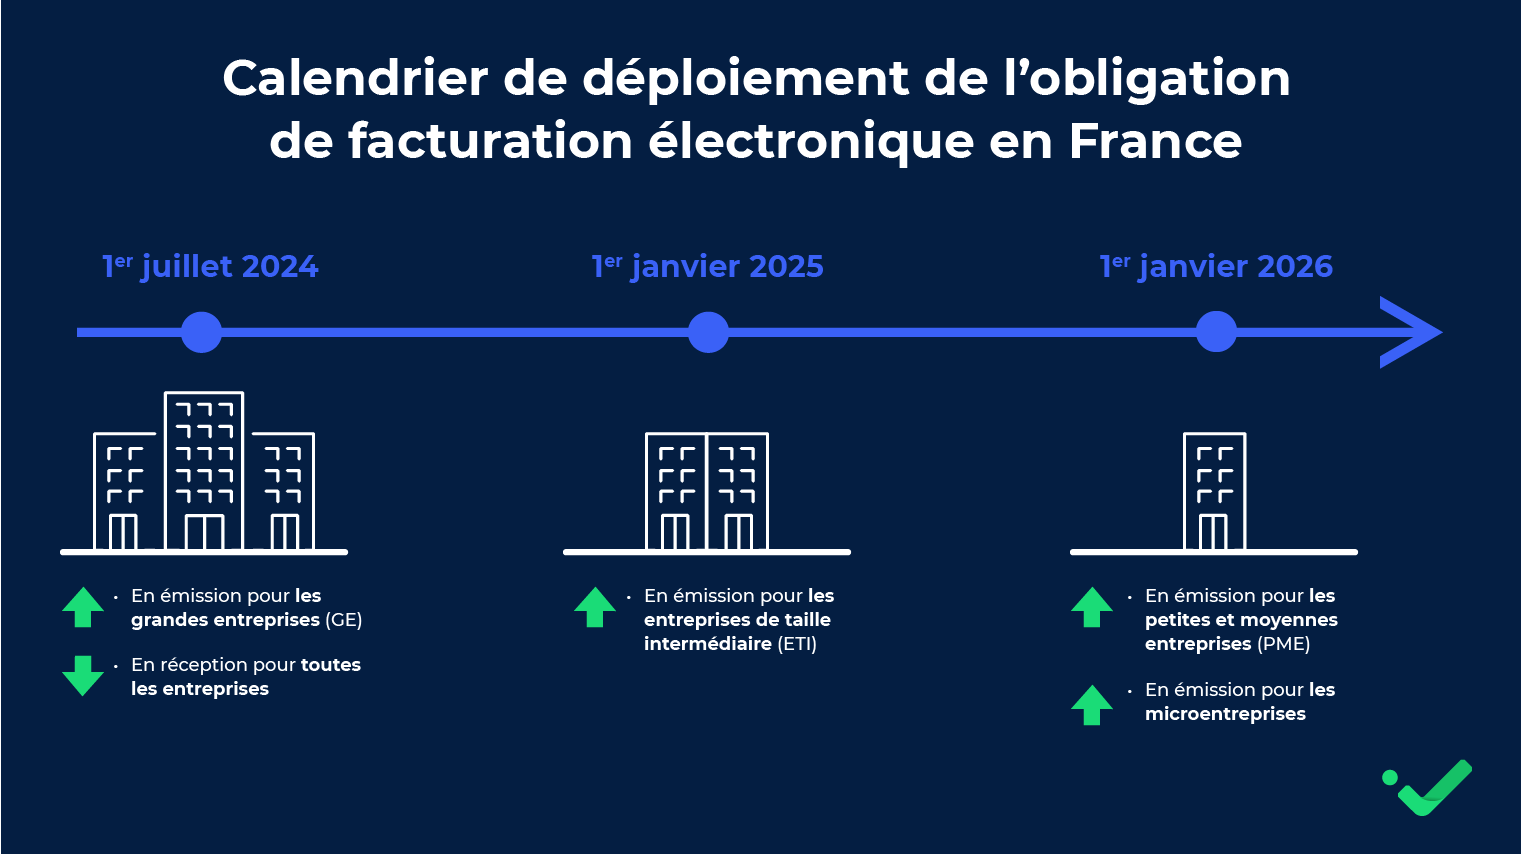 Le calendrier de déploiement de la facturation électronique en France